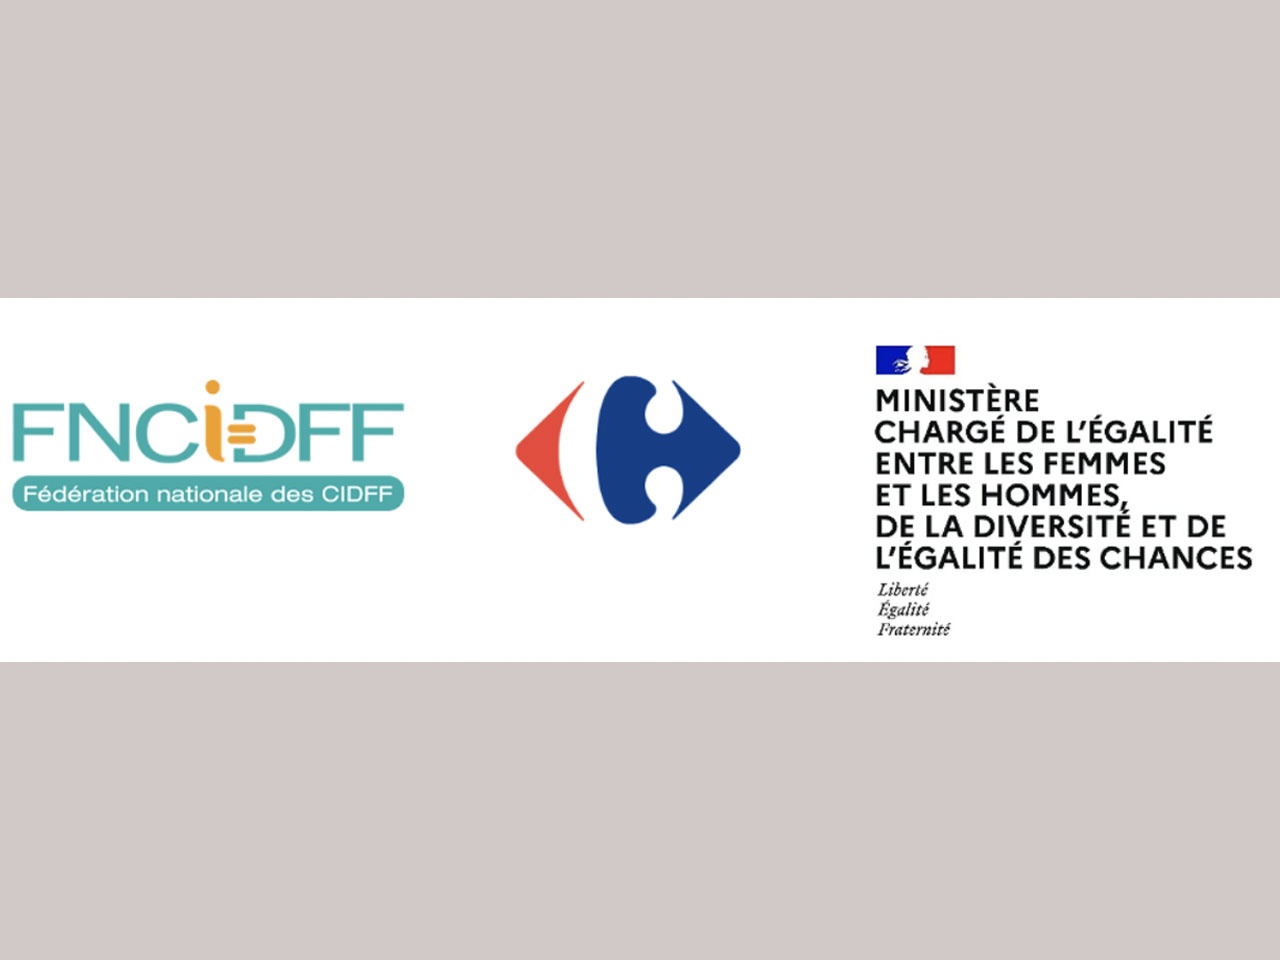 Carrefour soutient le retour à l’emploi des femmes victimes de violences en signant une convention sur les Droit des Femmes (FNCIDFF)